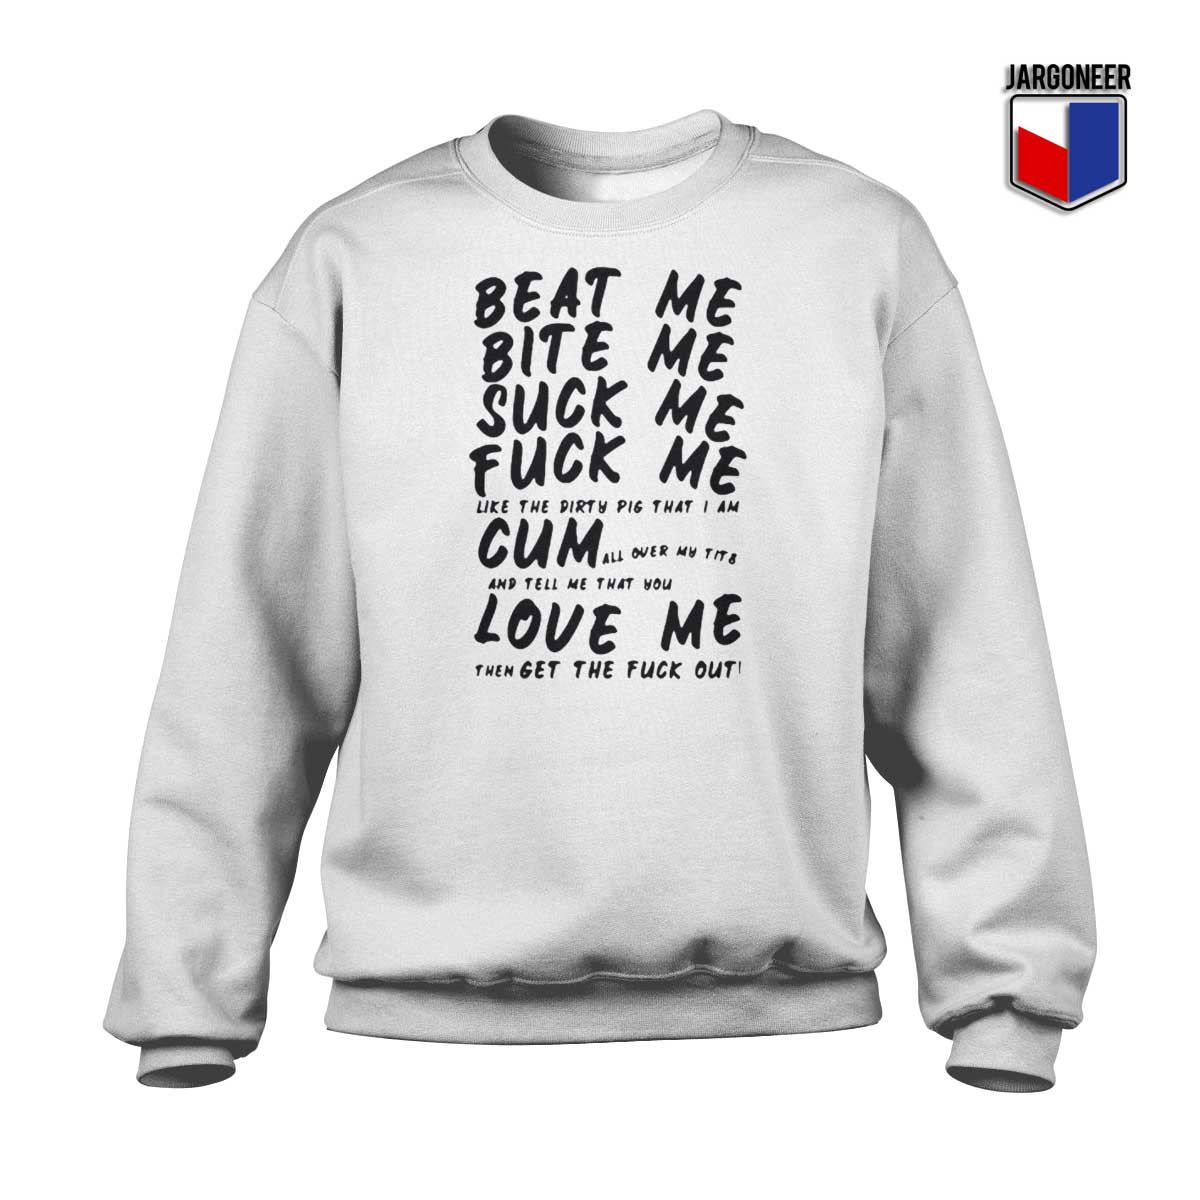 Beat Me Bite Me Suck Me Fuck Me Sweatshirt - Shop Unique Graphic Cool Shirt Designs